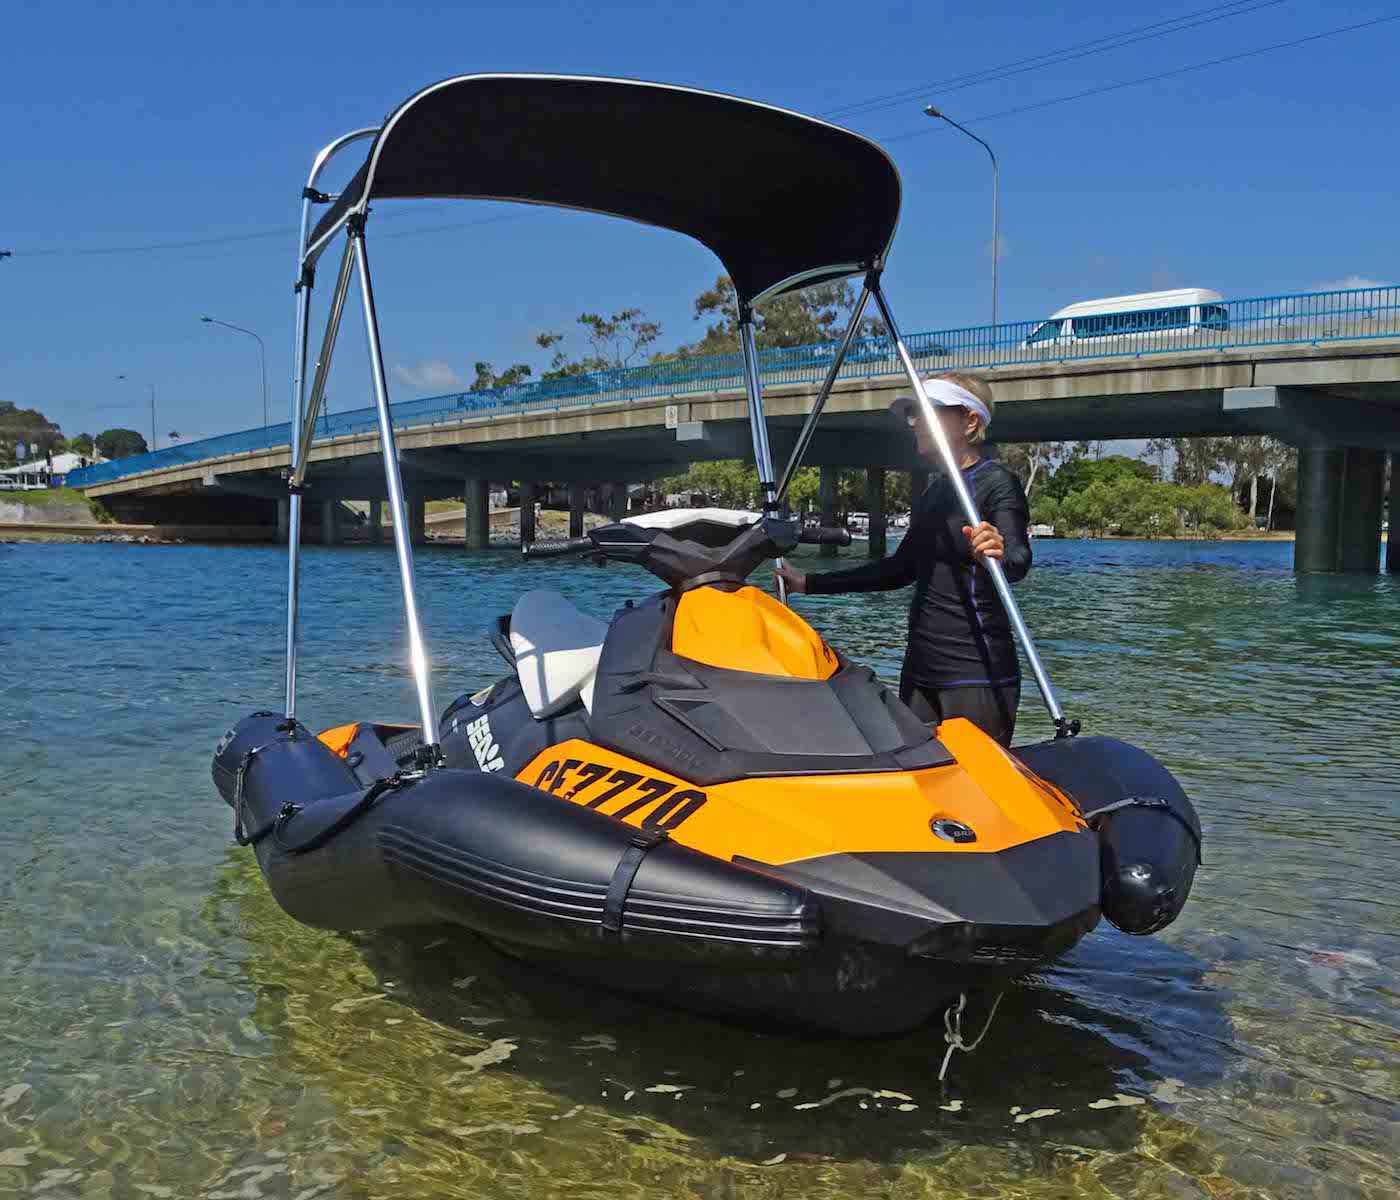 Dockitjet inflatable RIB kit with bimini.